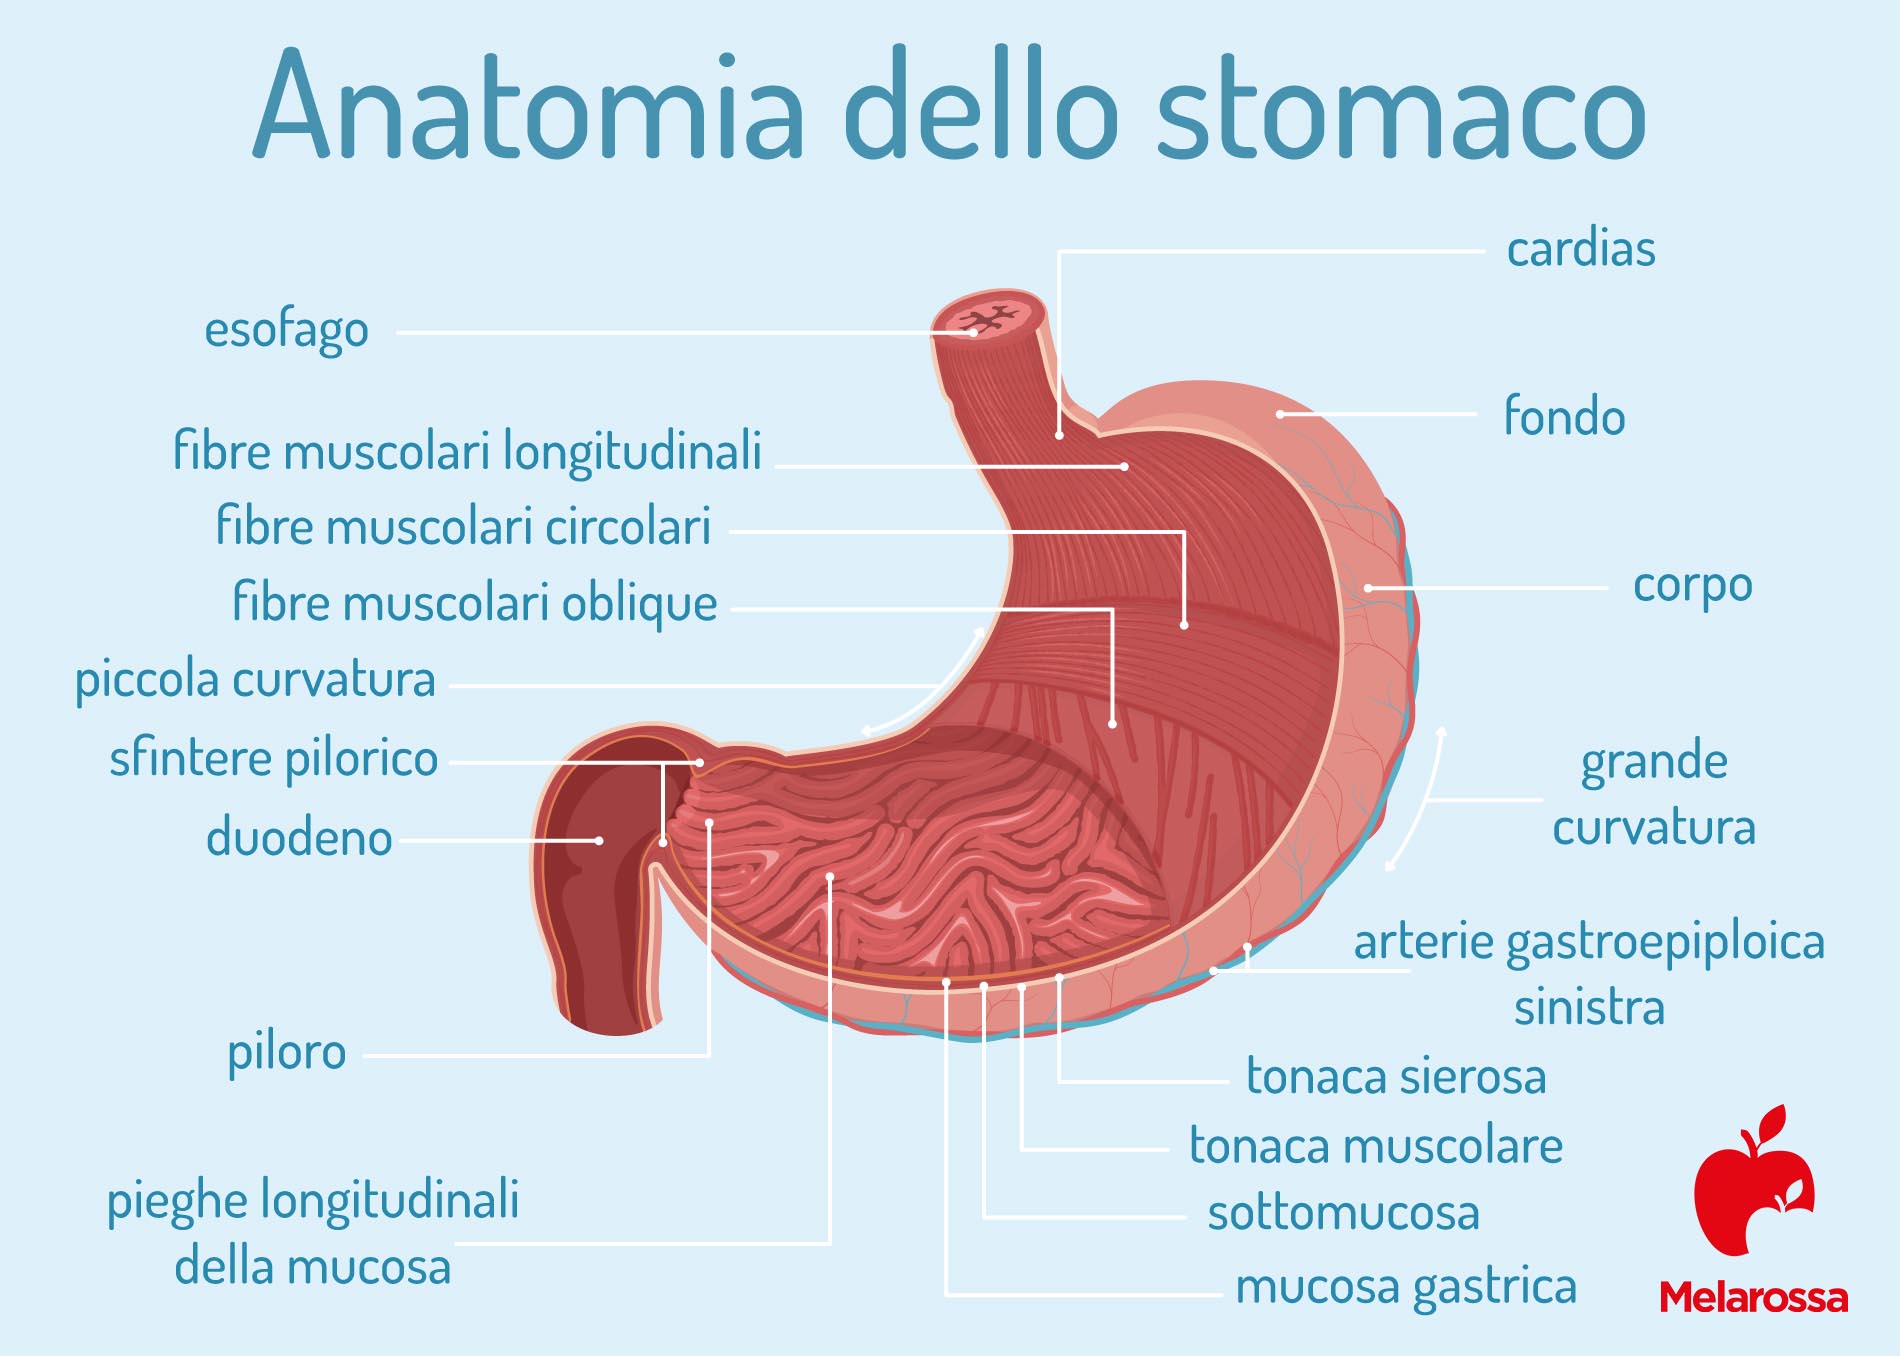 tumore allo stomaco: anatomia dello stomaco 